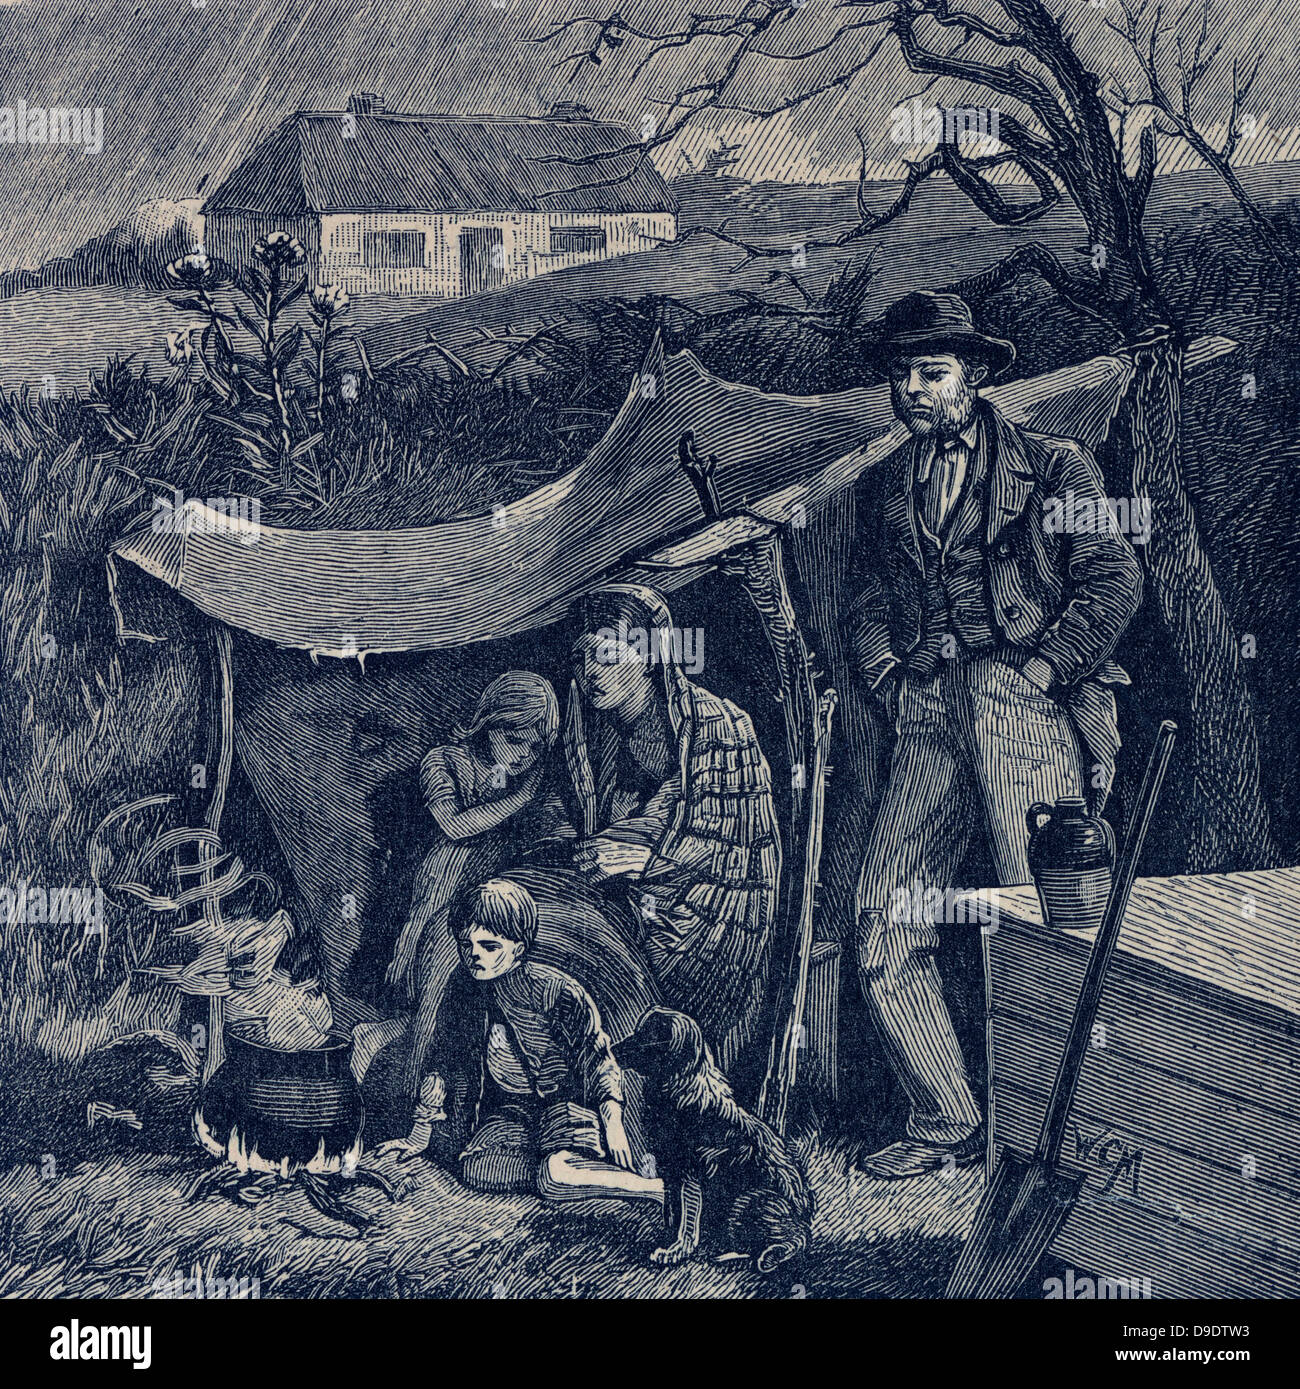 Irish potato famine 1840s. Evicted family. Stock Photo